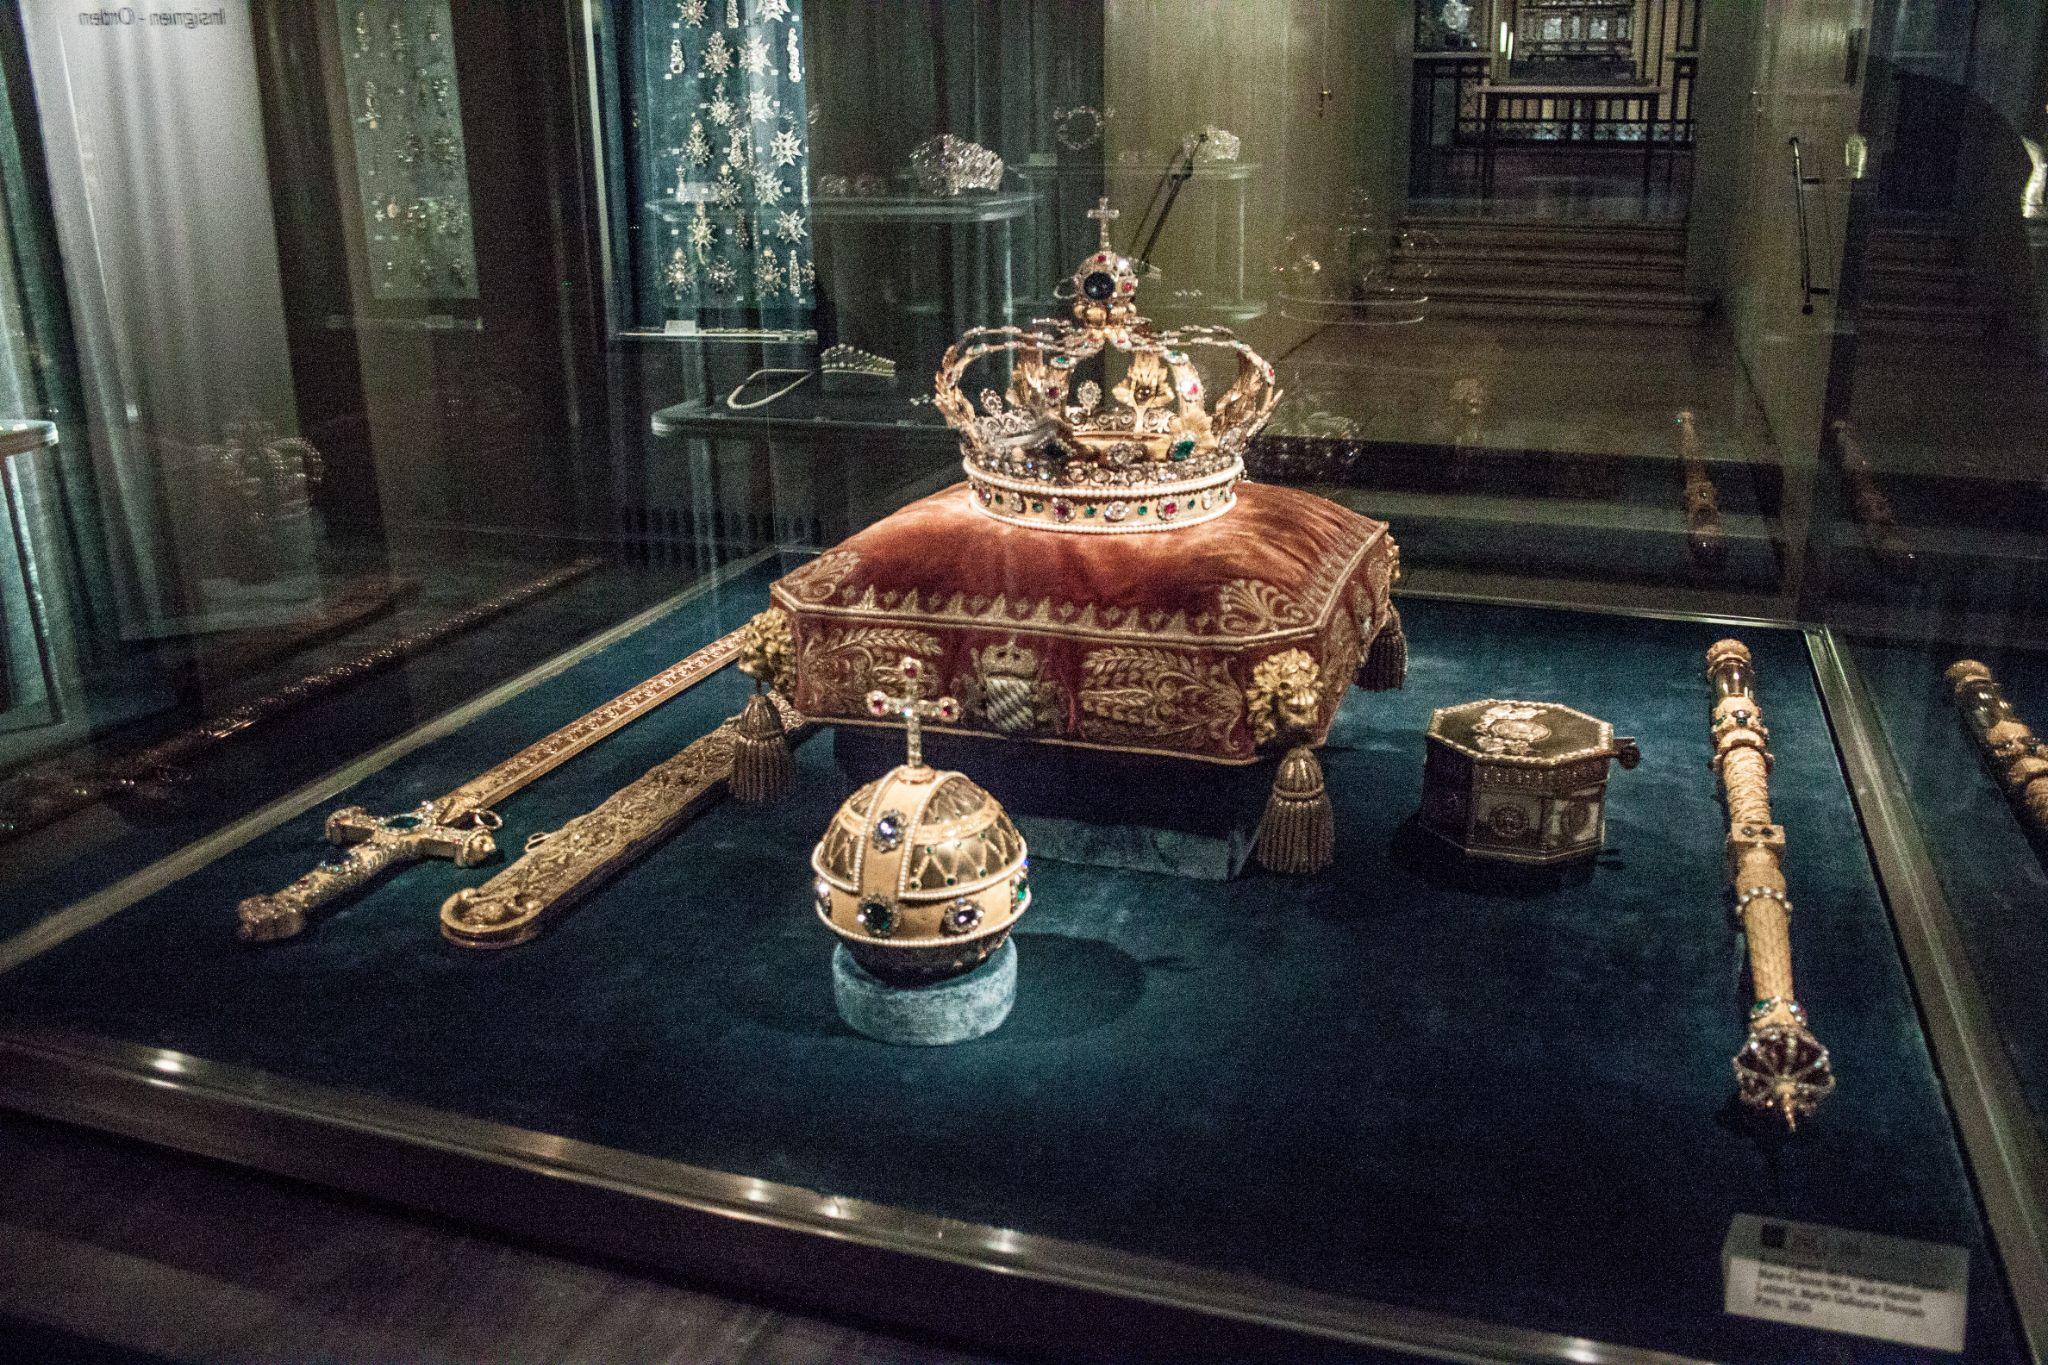 royal crowns in display case